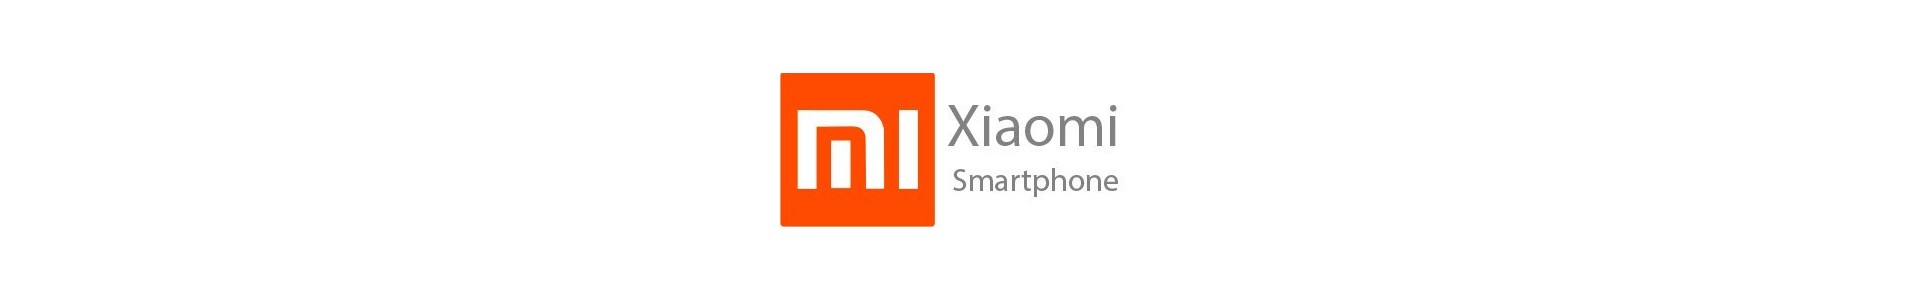 Todos os produtos Xiaomi sempre ao melhor preço na ONDISC